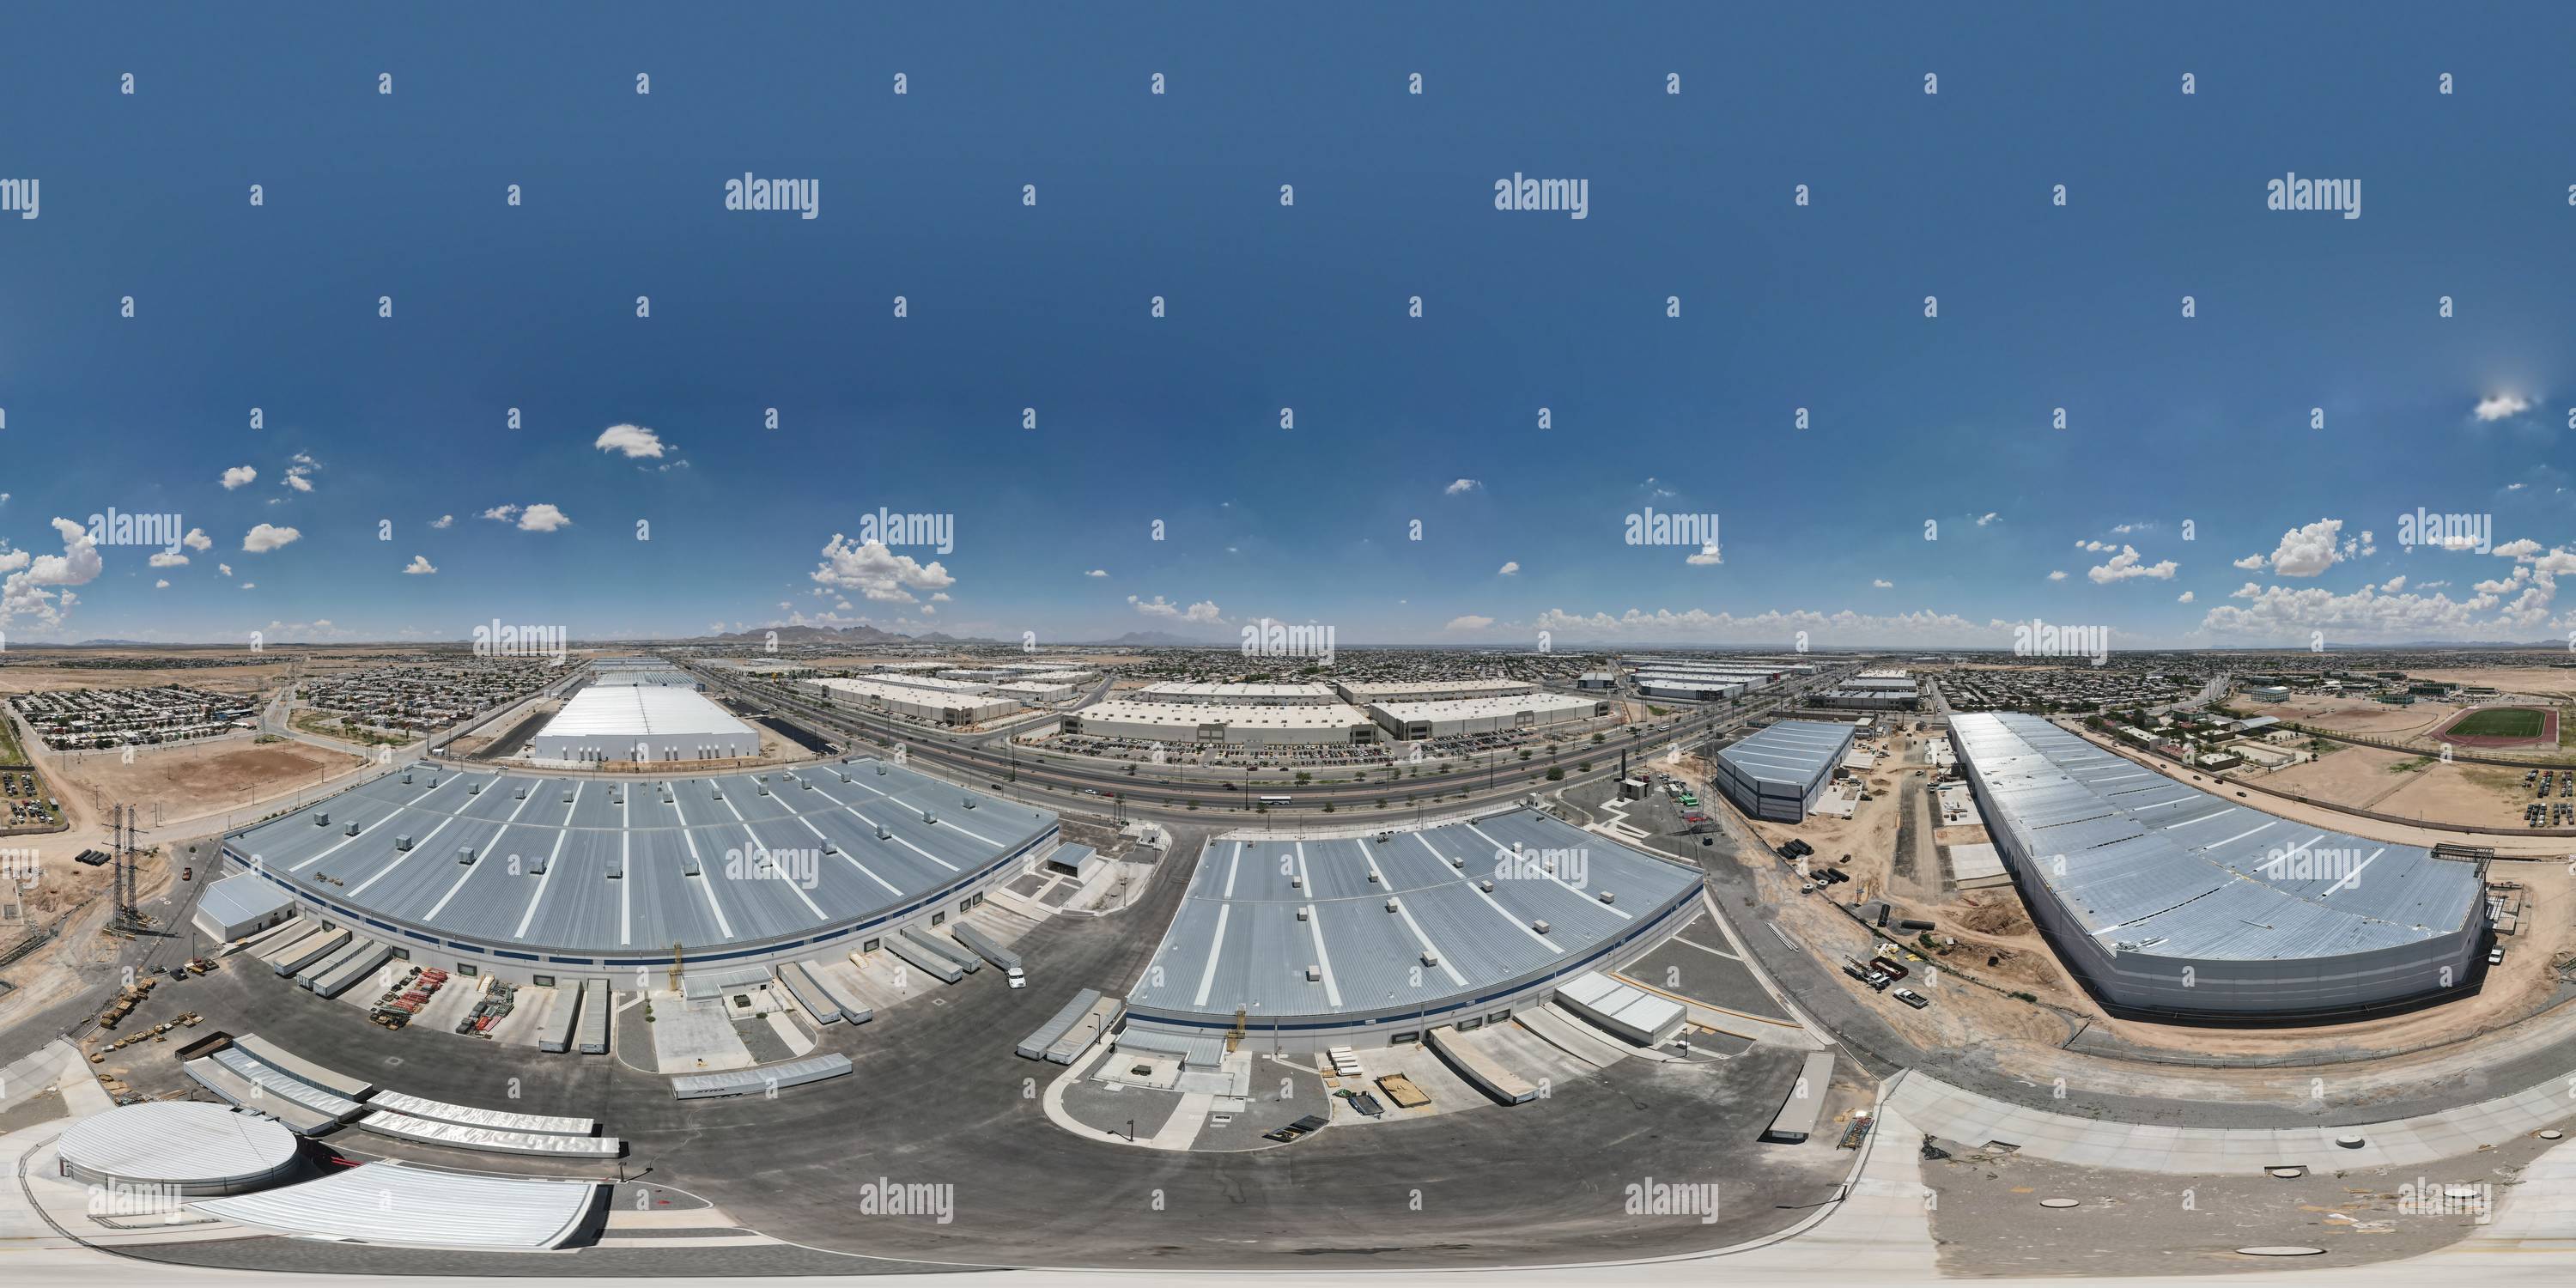 Visualizzazione panoramica a 360 gradi di IGS SouthPark fase 1